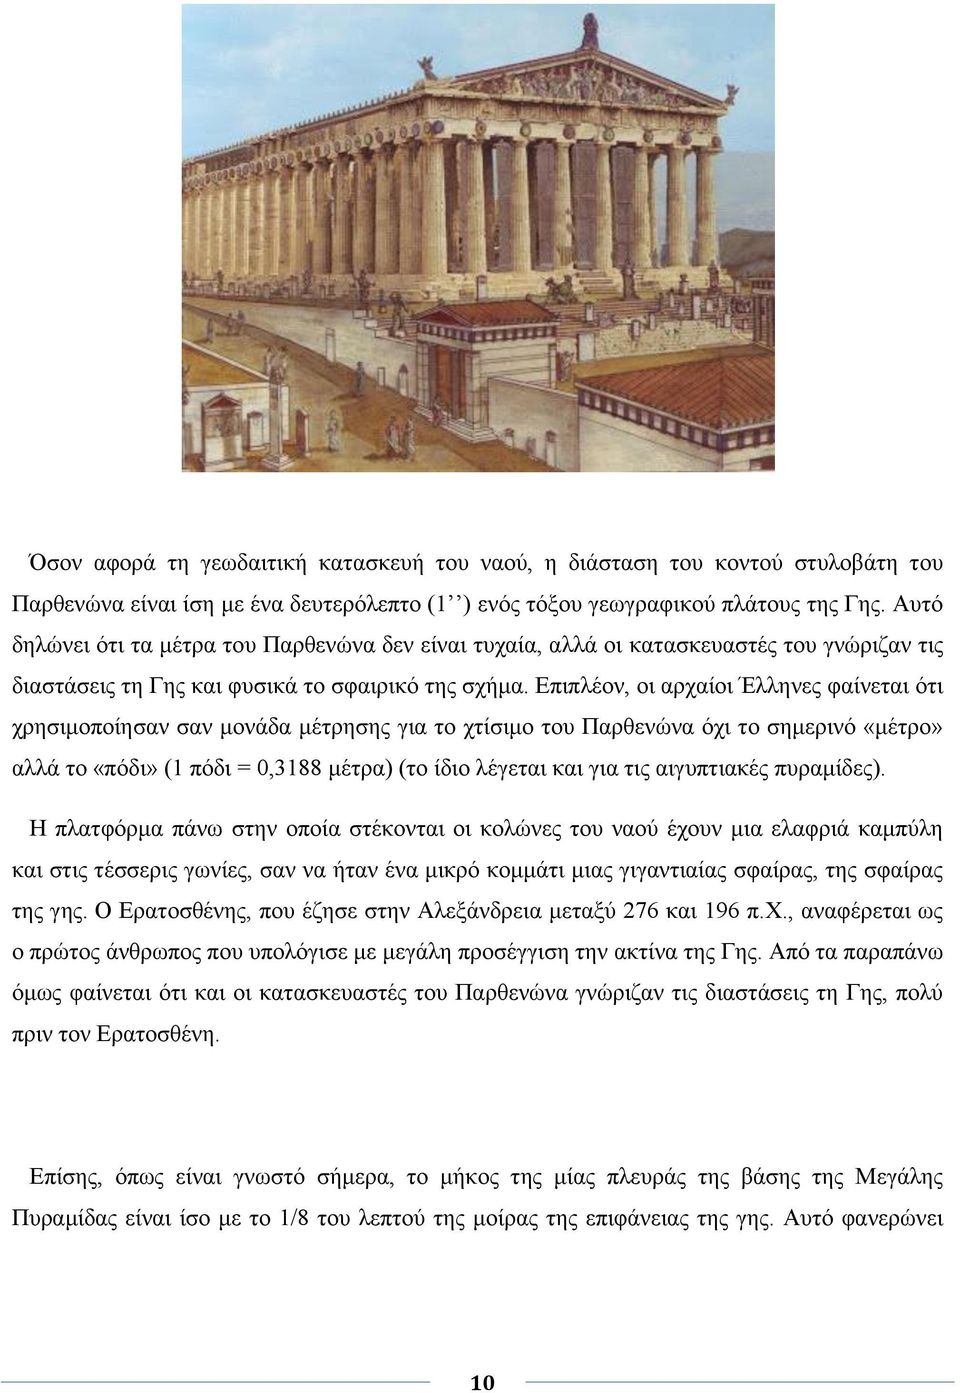 Επιπλέον, οι αρχαίοι Έλληνες φαίνεται ότι χρησιμοποίησαν σαν μονάδα μέτρησης για το χτίσιμο του Παρθενώνα όχι το σημερινό «μέτρο» αλλά το «πόδι» (1 πόδι = 0,3188 μέτρα) (το ίδιο λέγεται και για τις